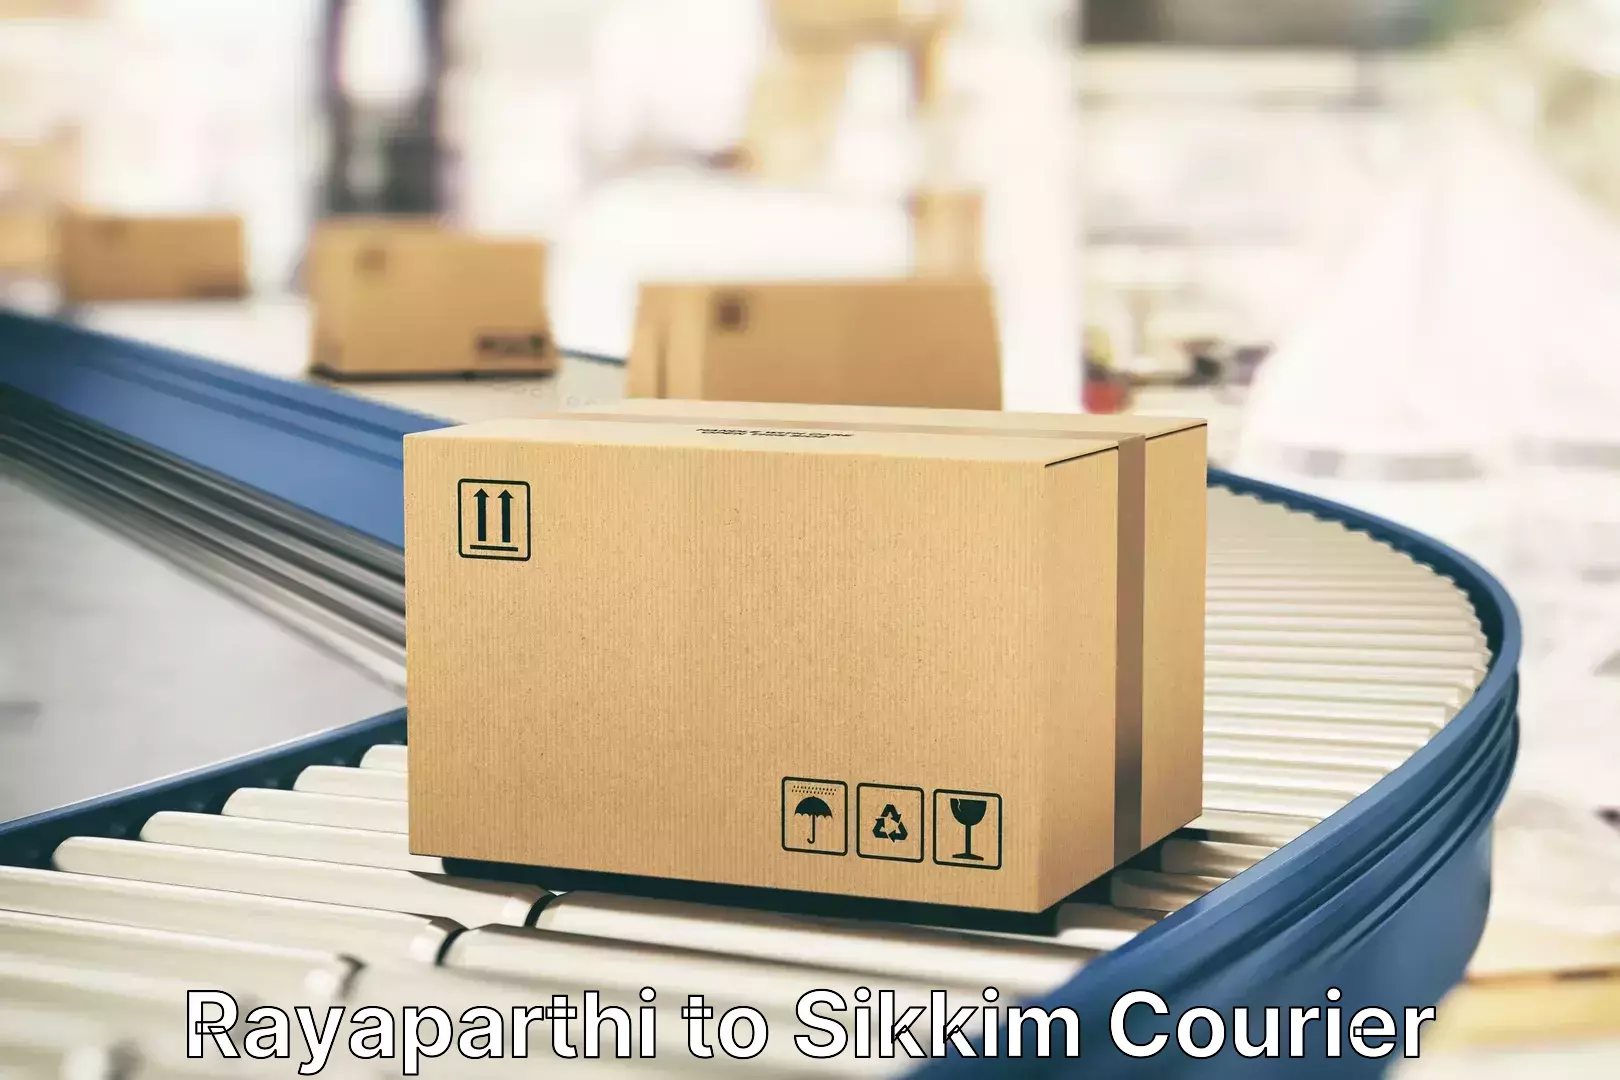 Luggage shipment tracking Rayaparthi to Singtam